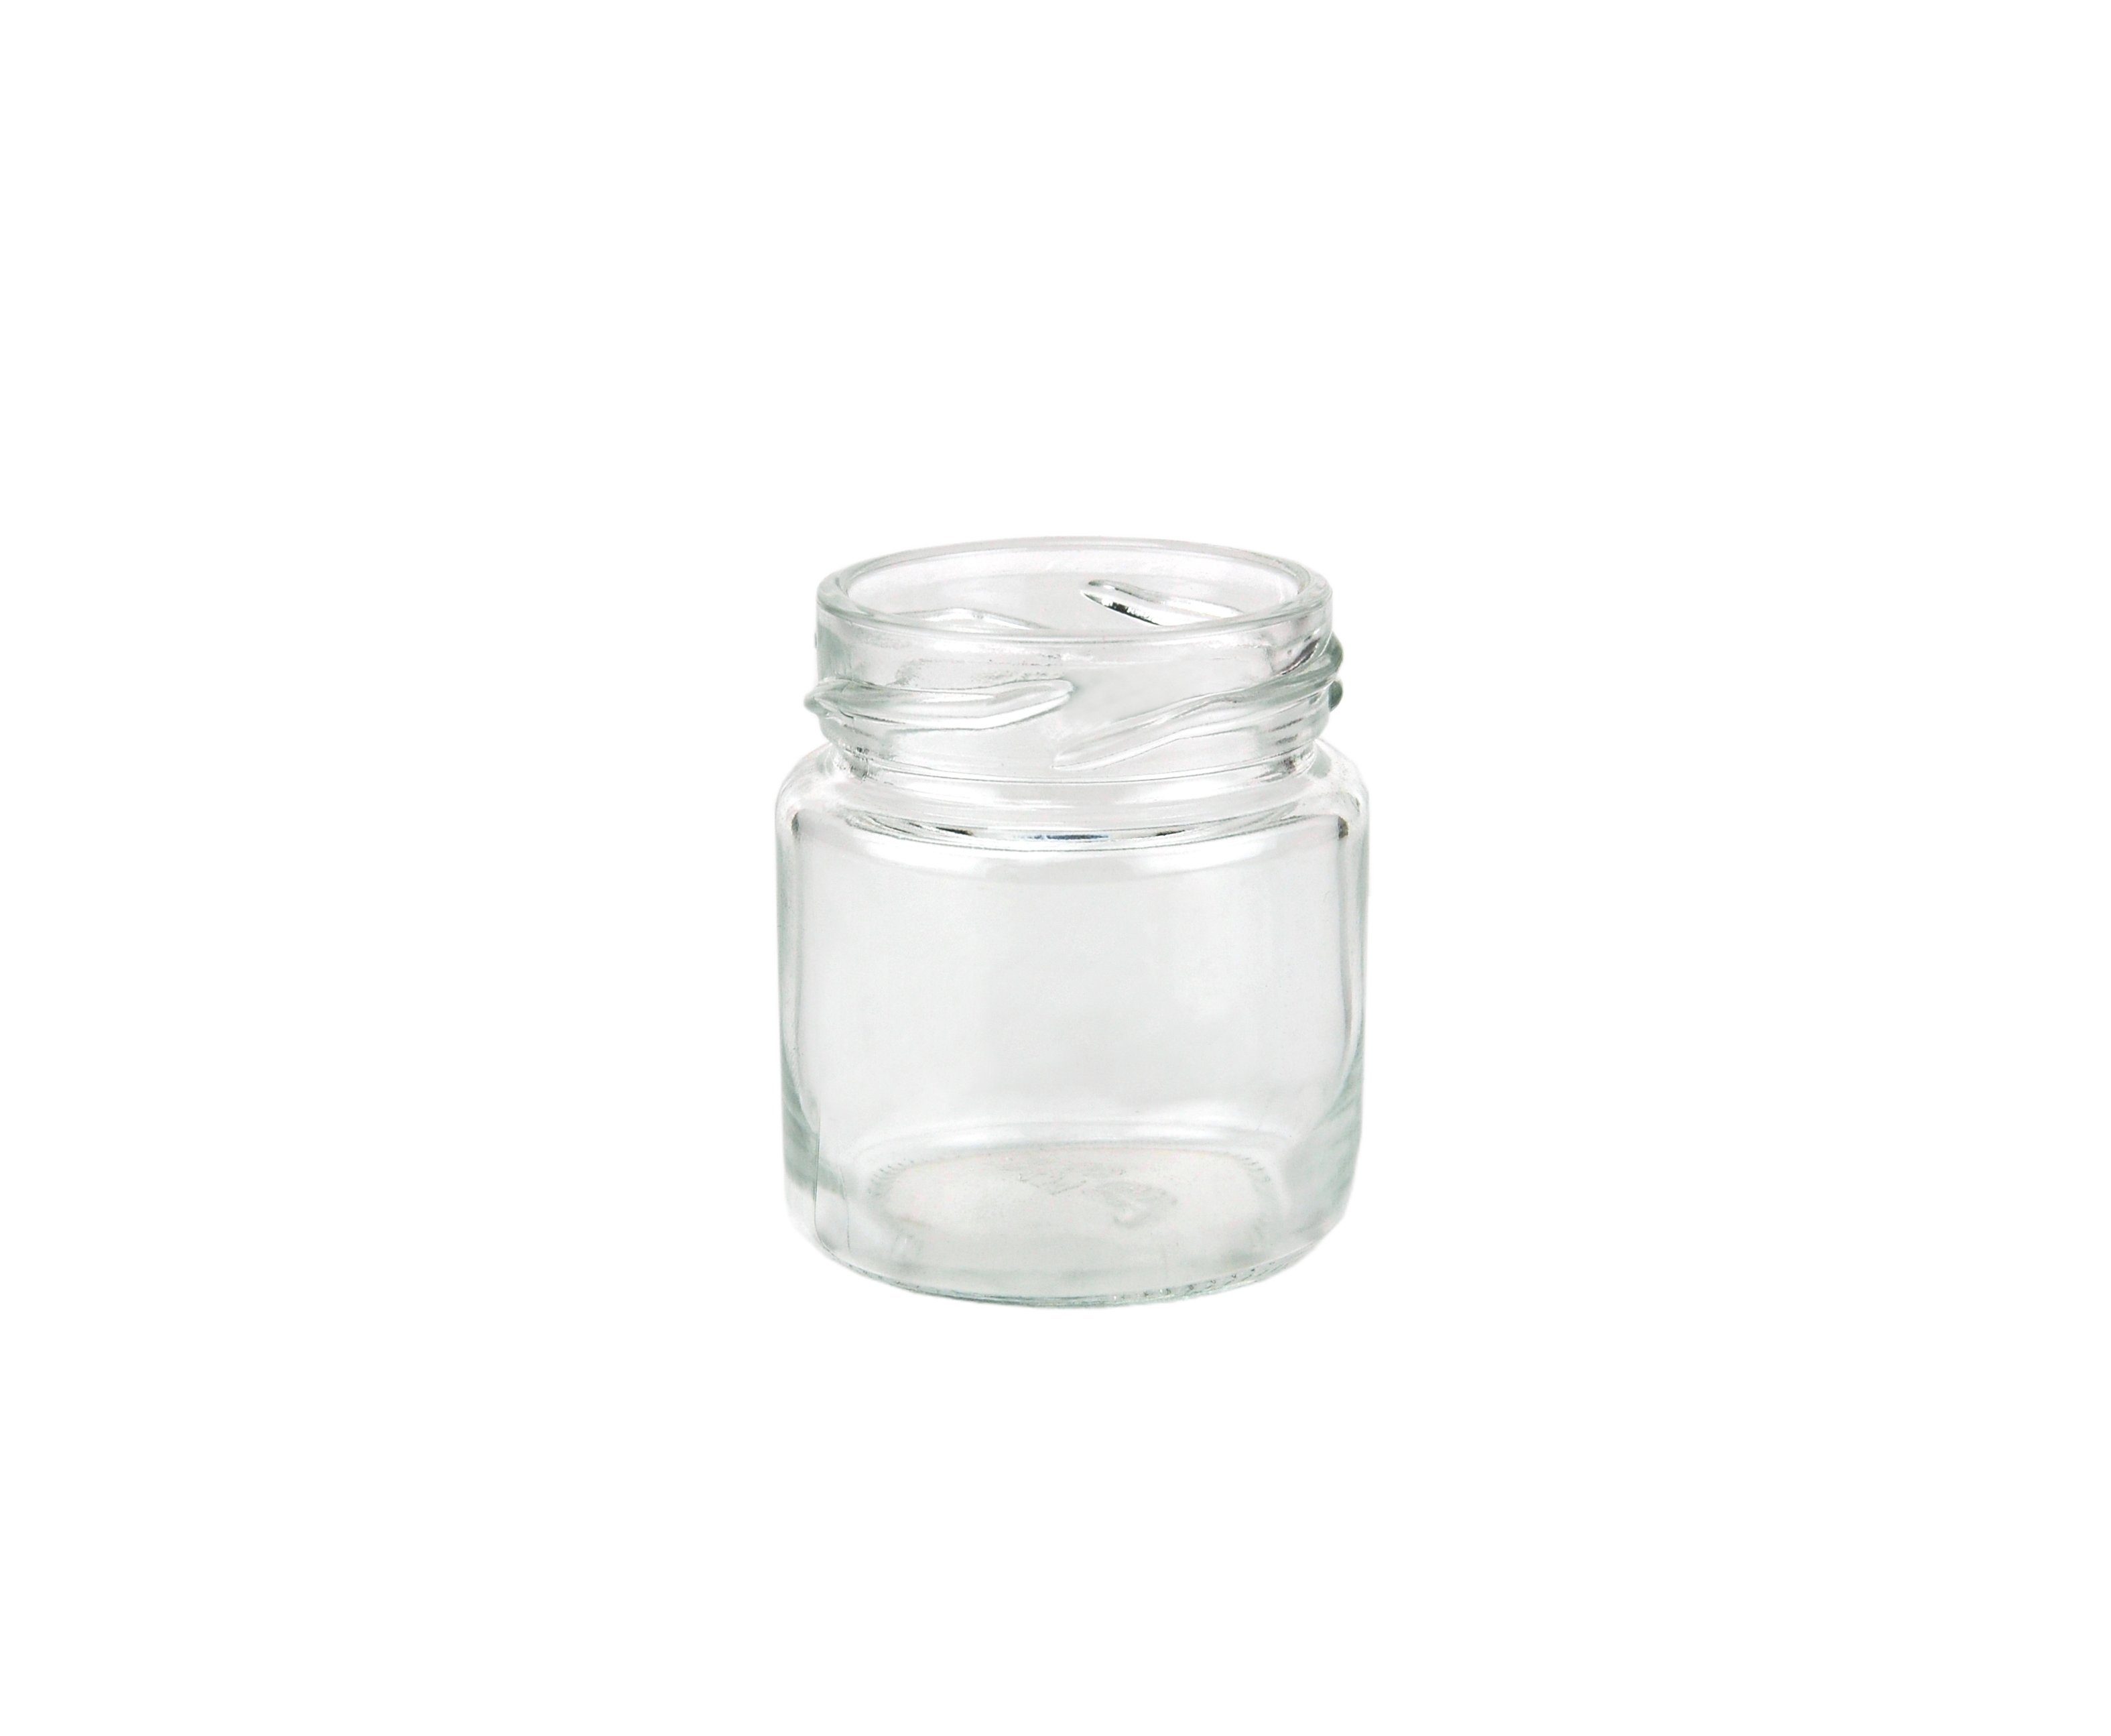 Set incl. 53 MamboCat 150er Einmachglas To Sturzglas Glas Deckel silberner Rezeptheft, ml 43